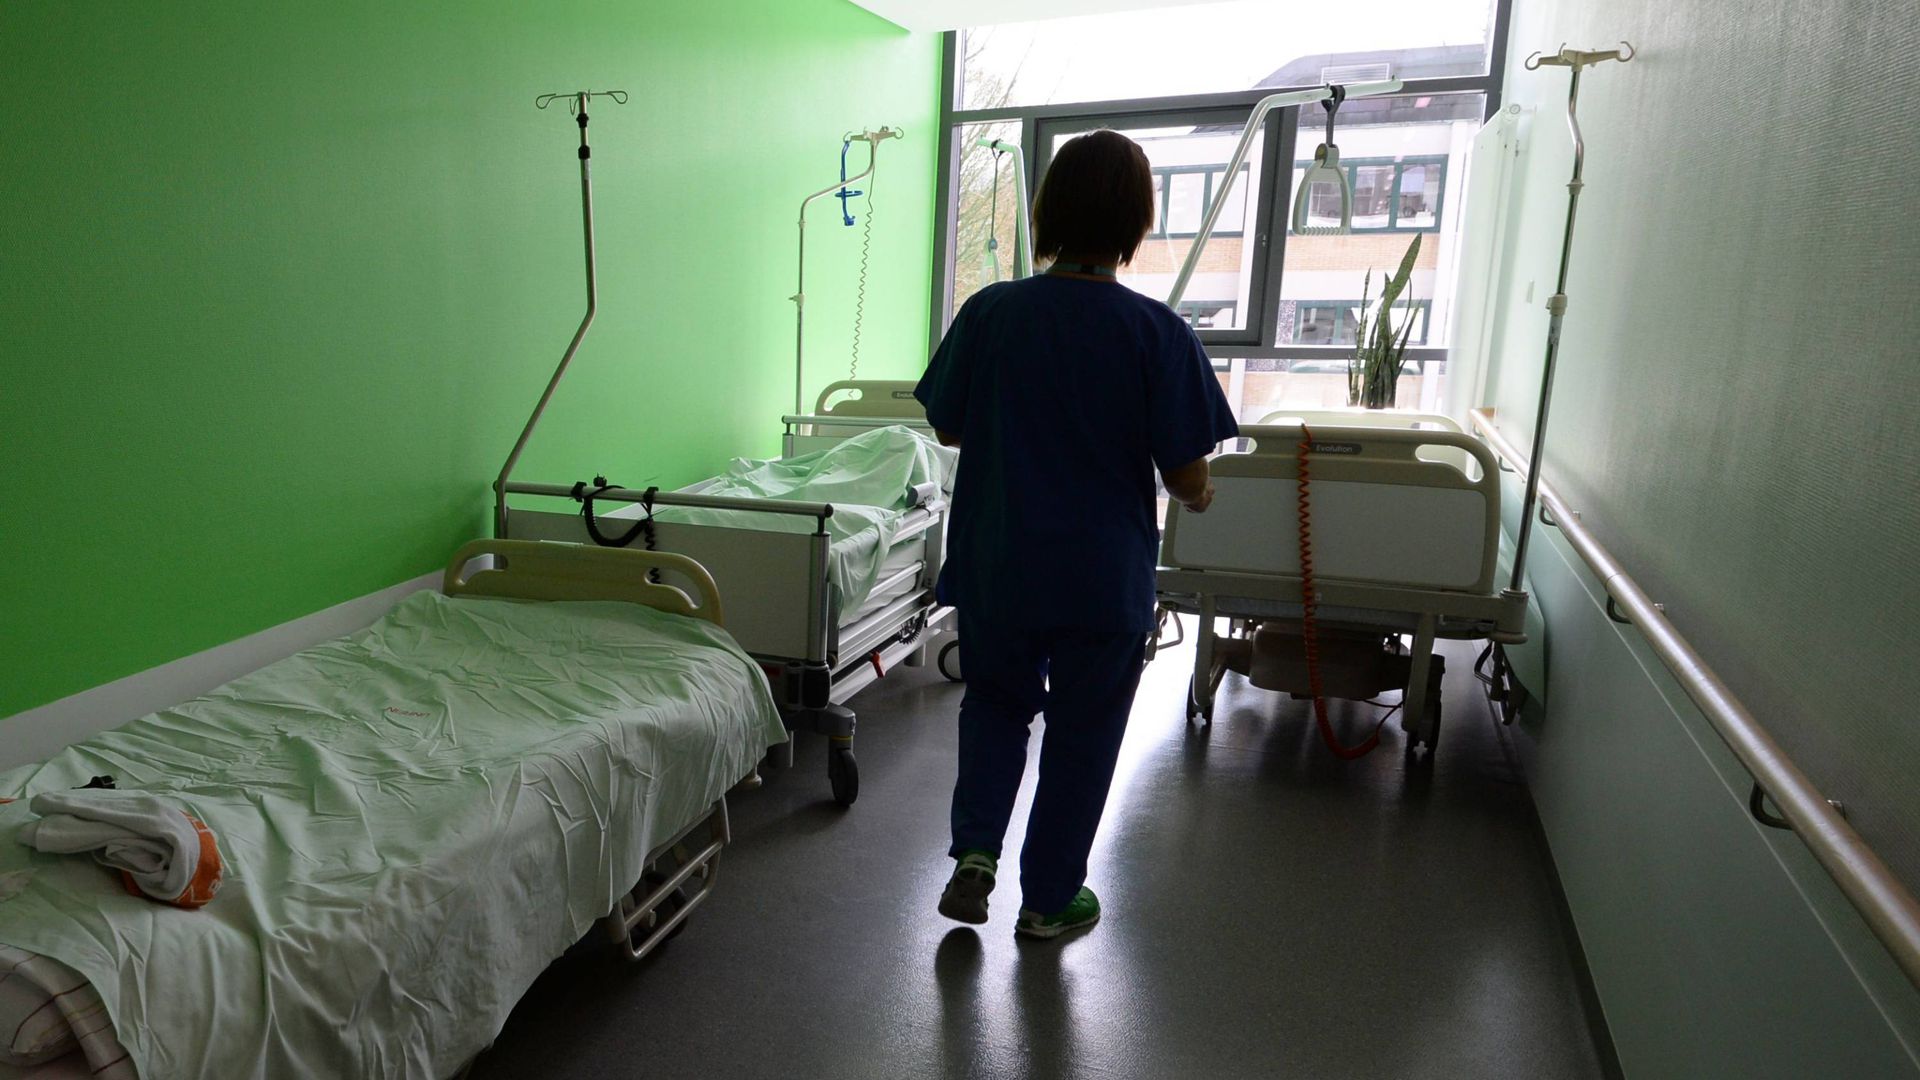 ARCHIV - Eine Krankenschwester geht  in einem Krankenhaus über einen Flur und holt ein Bett.